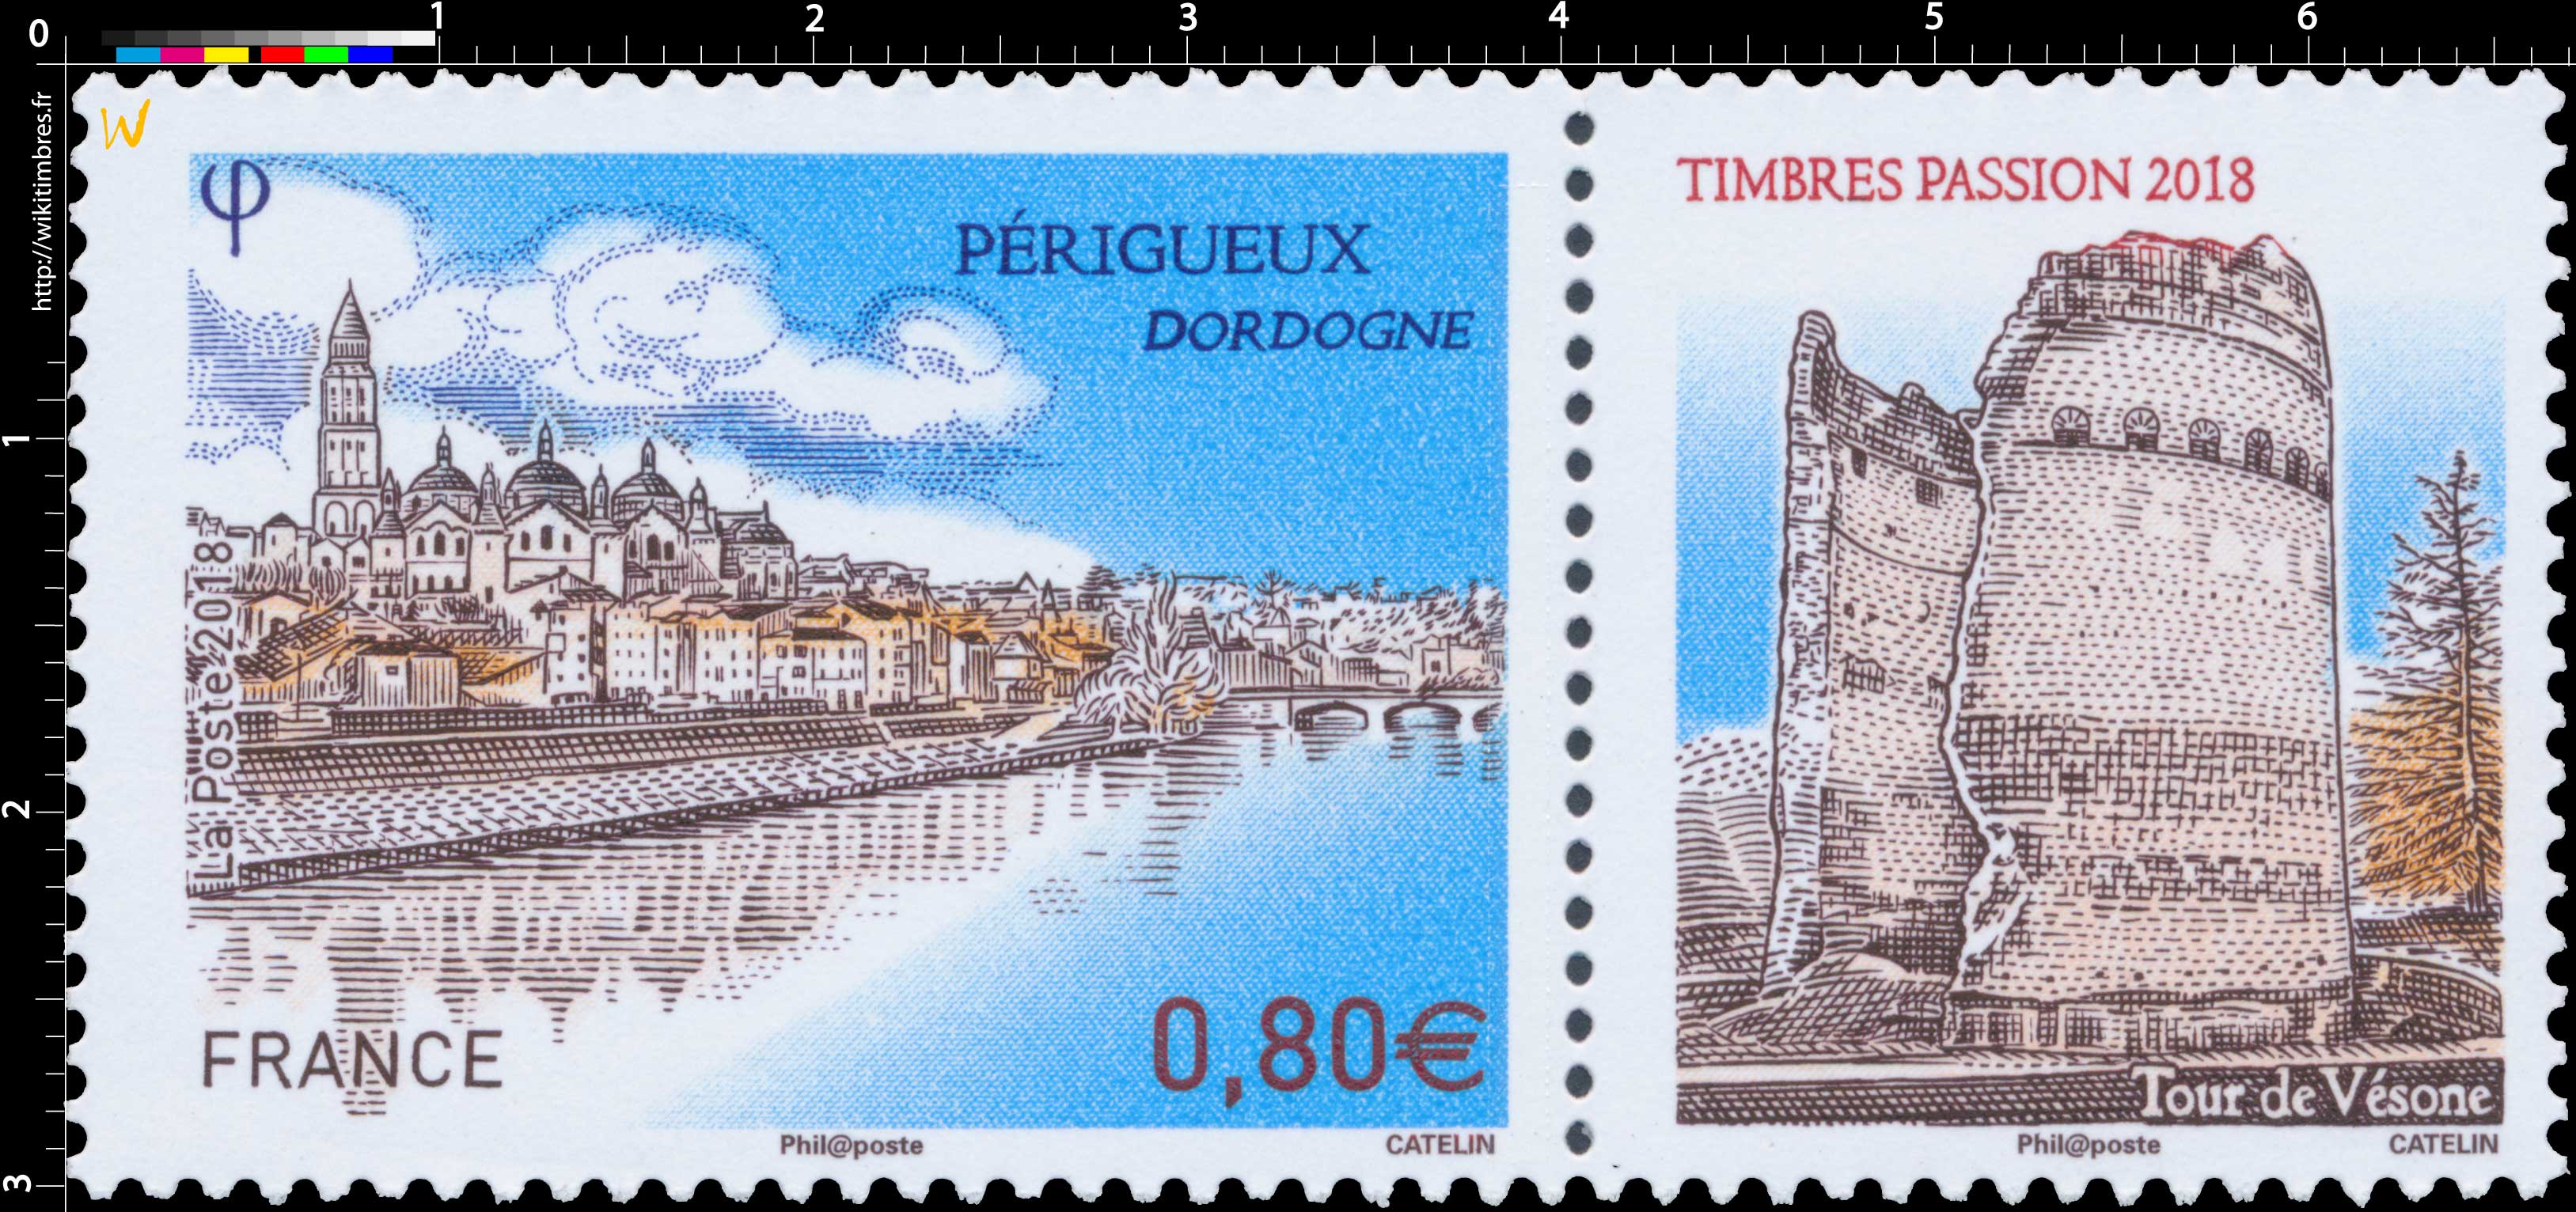 2018 TIMBRE PASSION -  Périgueux Dordogne